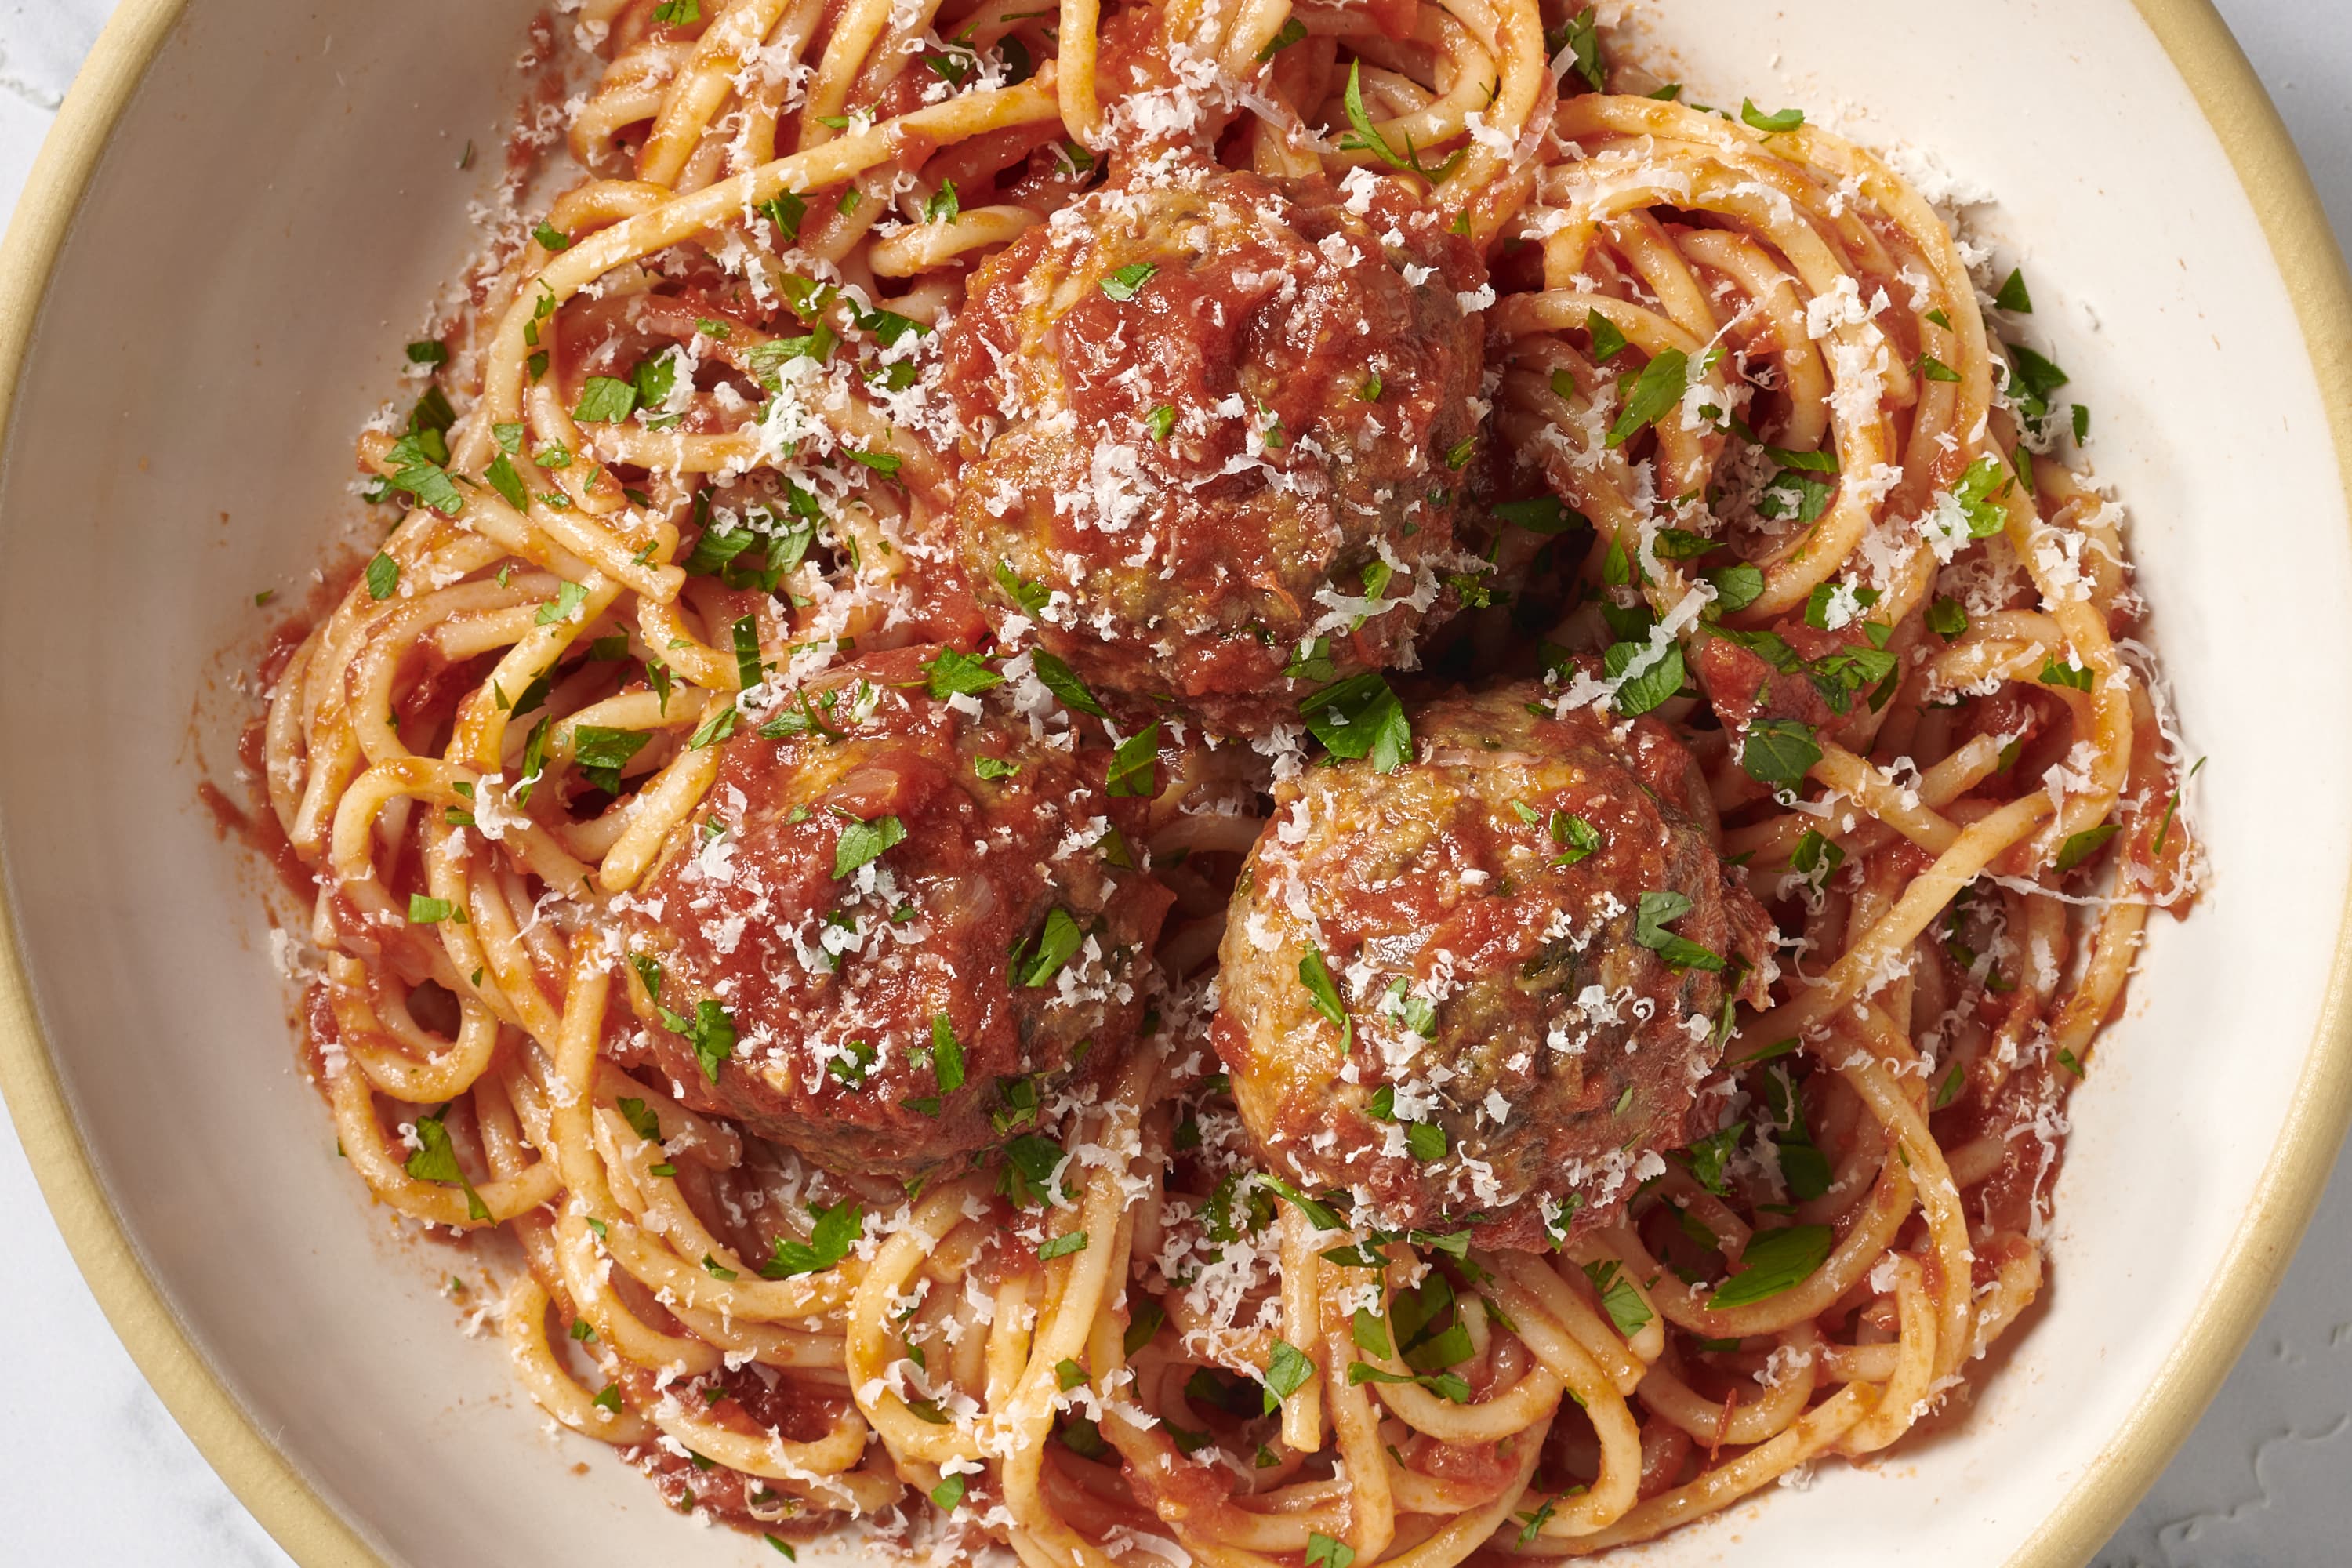 https://cdn.apartmenttherapy.info/image/upload/v1691508918/k/2023-07-spaghetti-and-meatballs/spaghetti-and-meatballs-155-horizontal.jpg